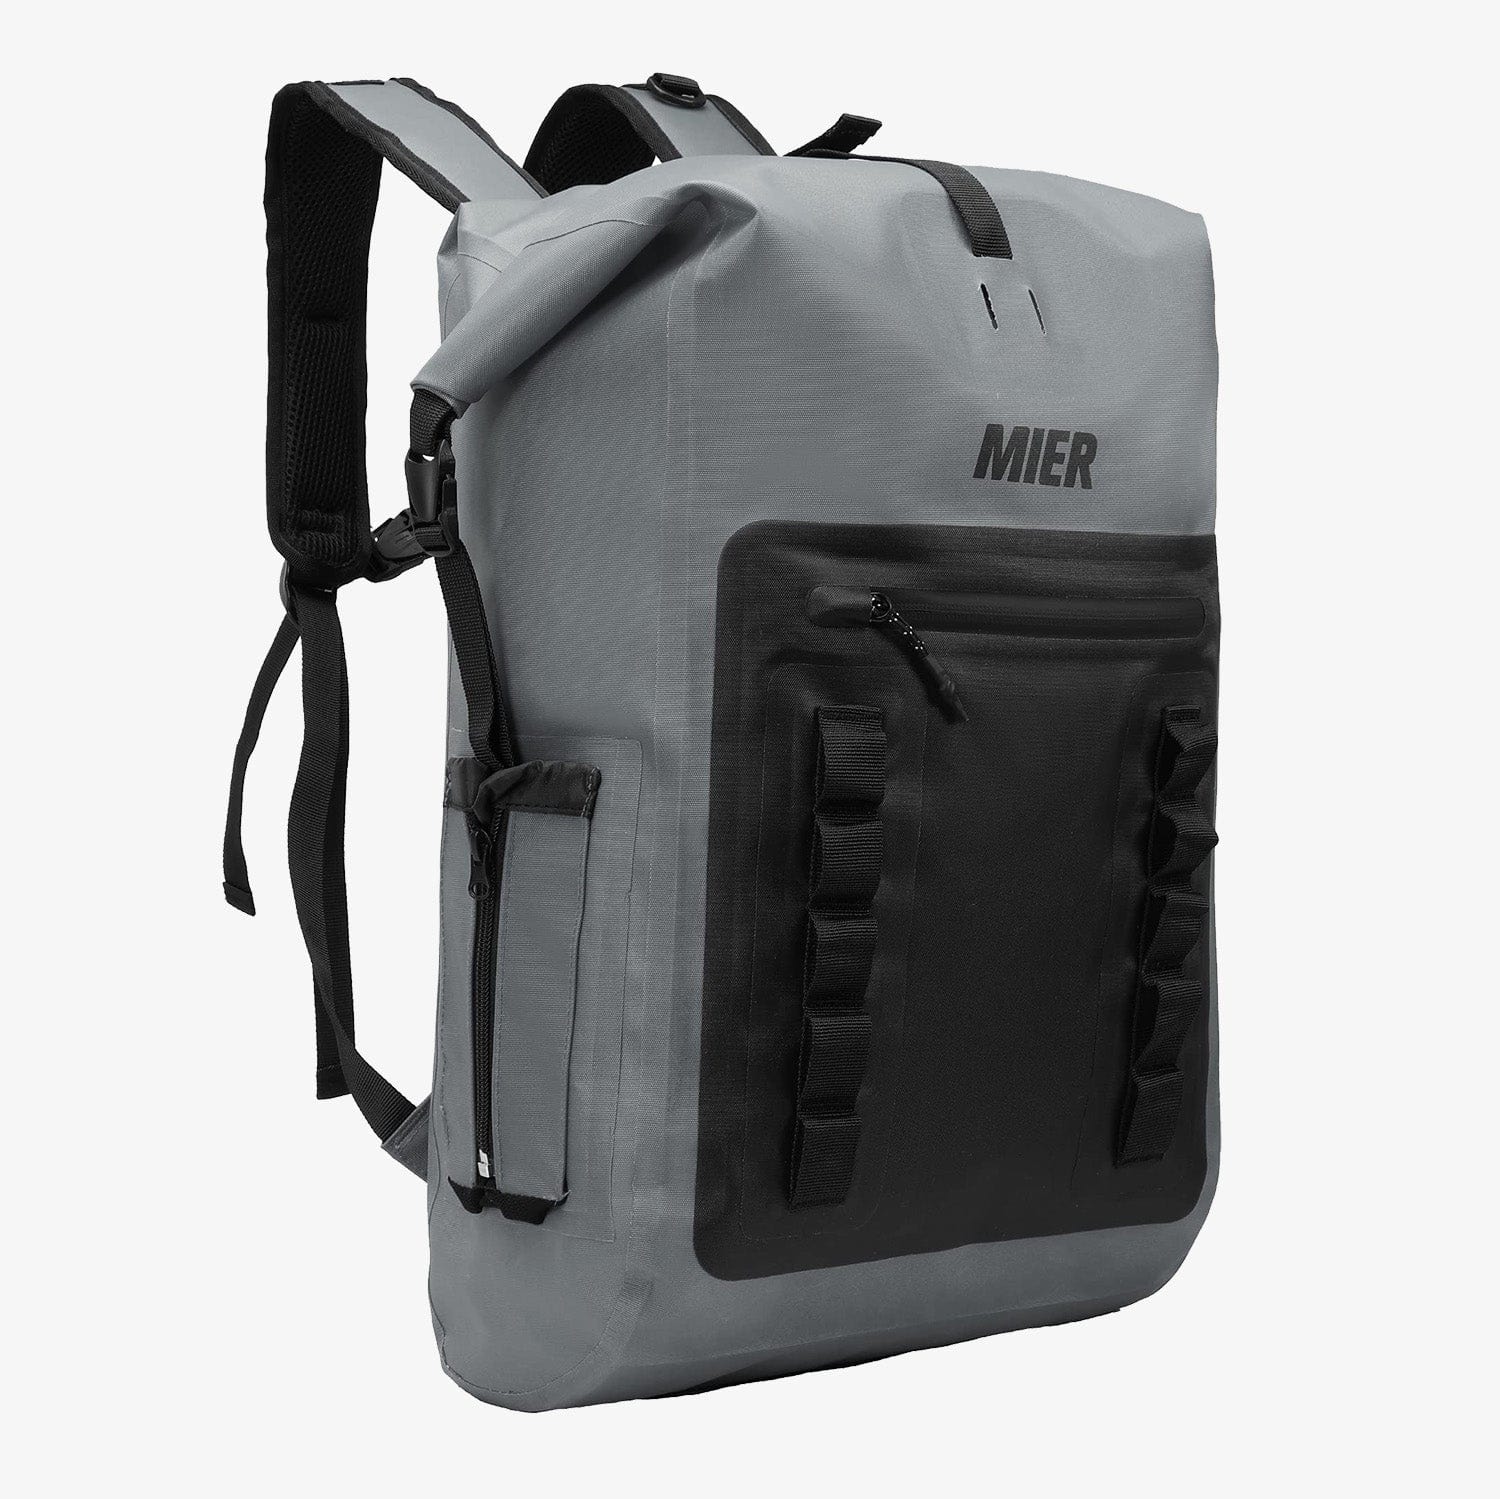 Waterproof Backpack Sack Roll-Top Closure Dry Bag, Dark Gray